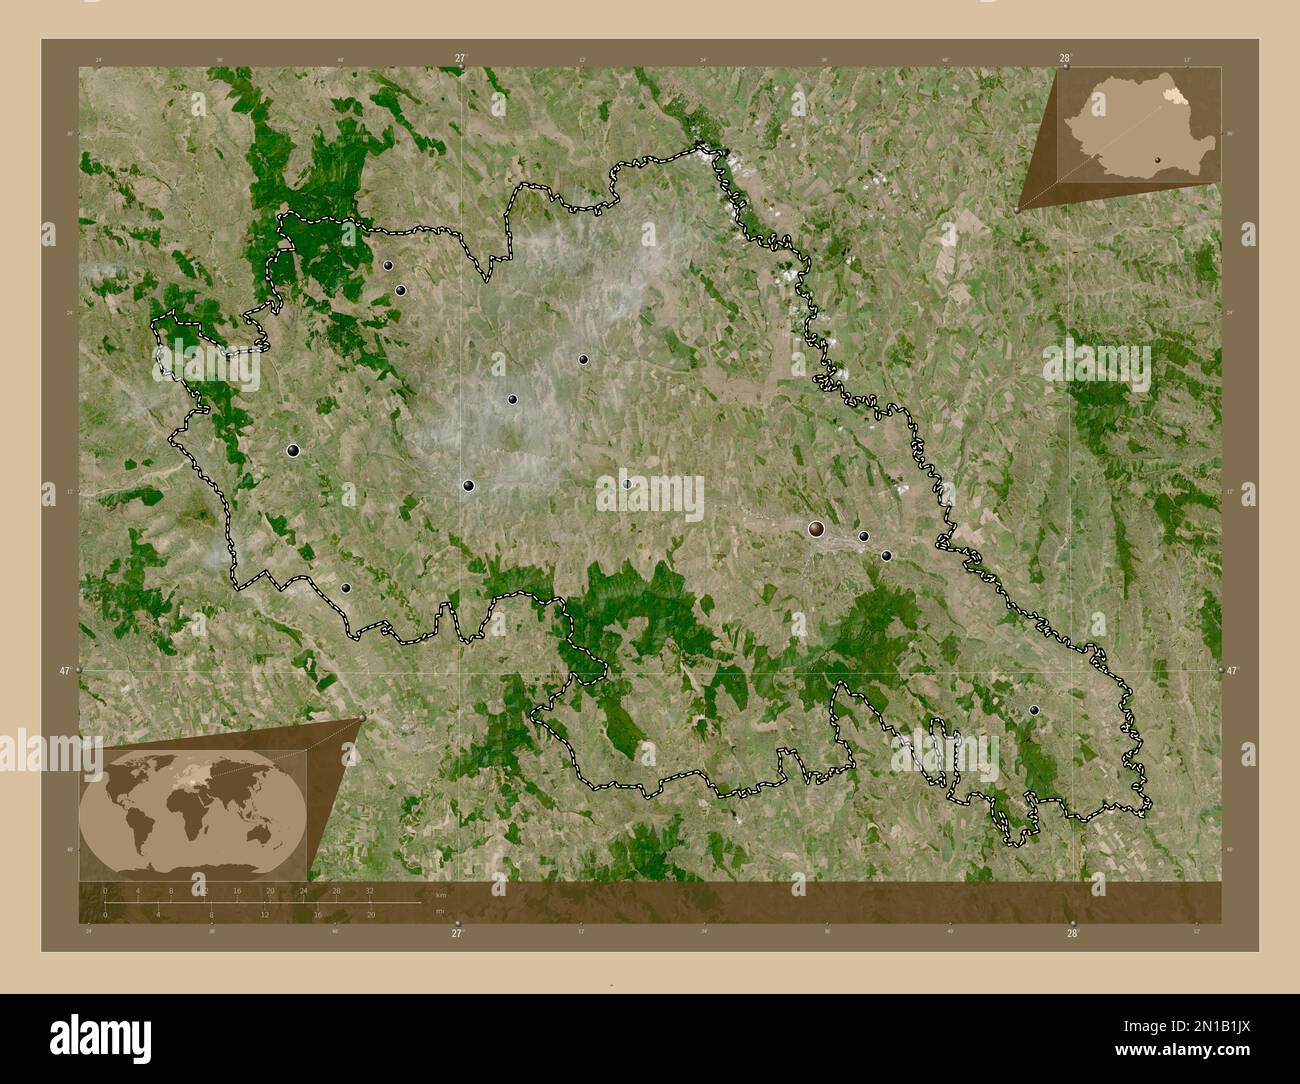 Iasi, comté de Roumanie. Carte satellite basse résolution. Lieux des principales villes de la région. Cartes d'emplacement auxiliaire d'angle Banque D'Images